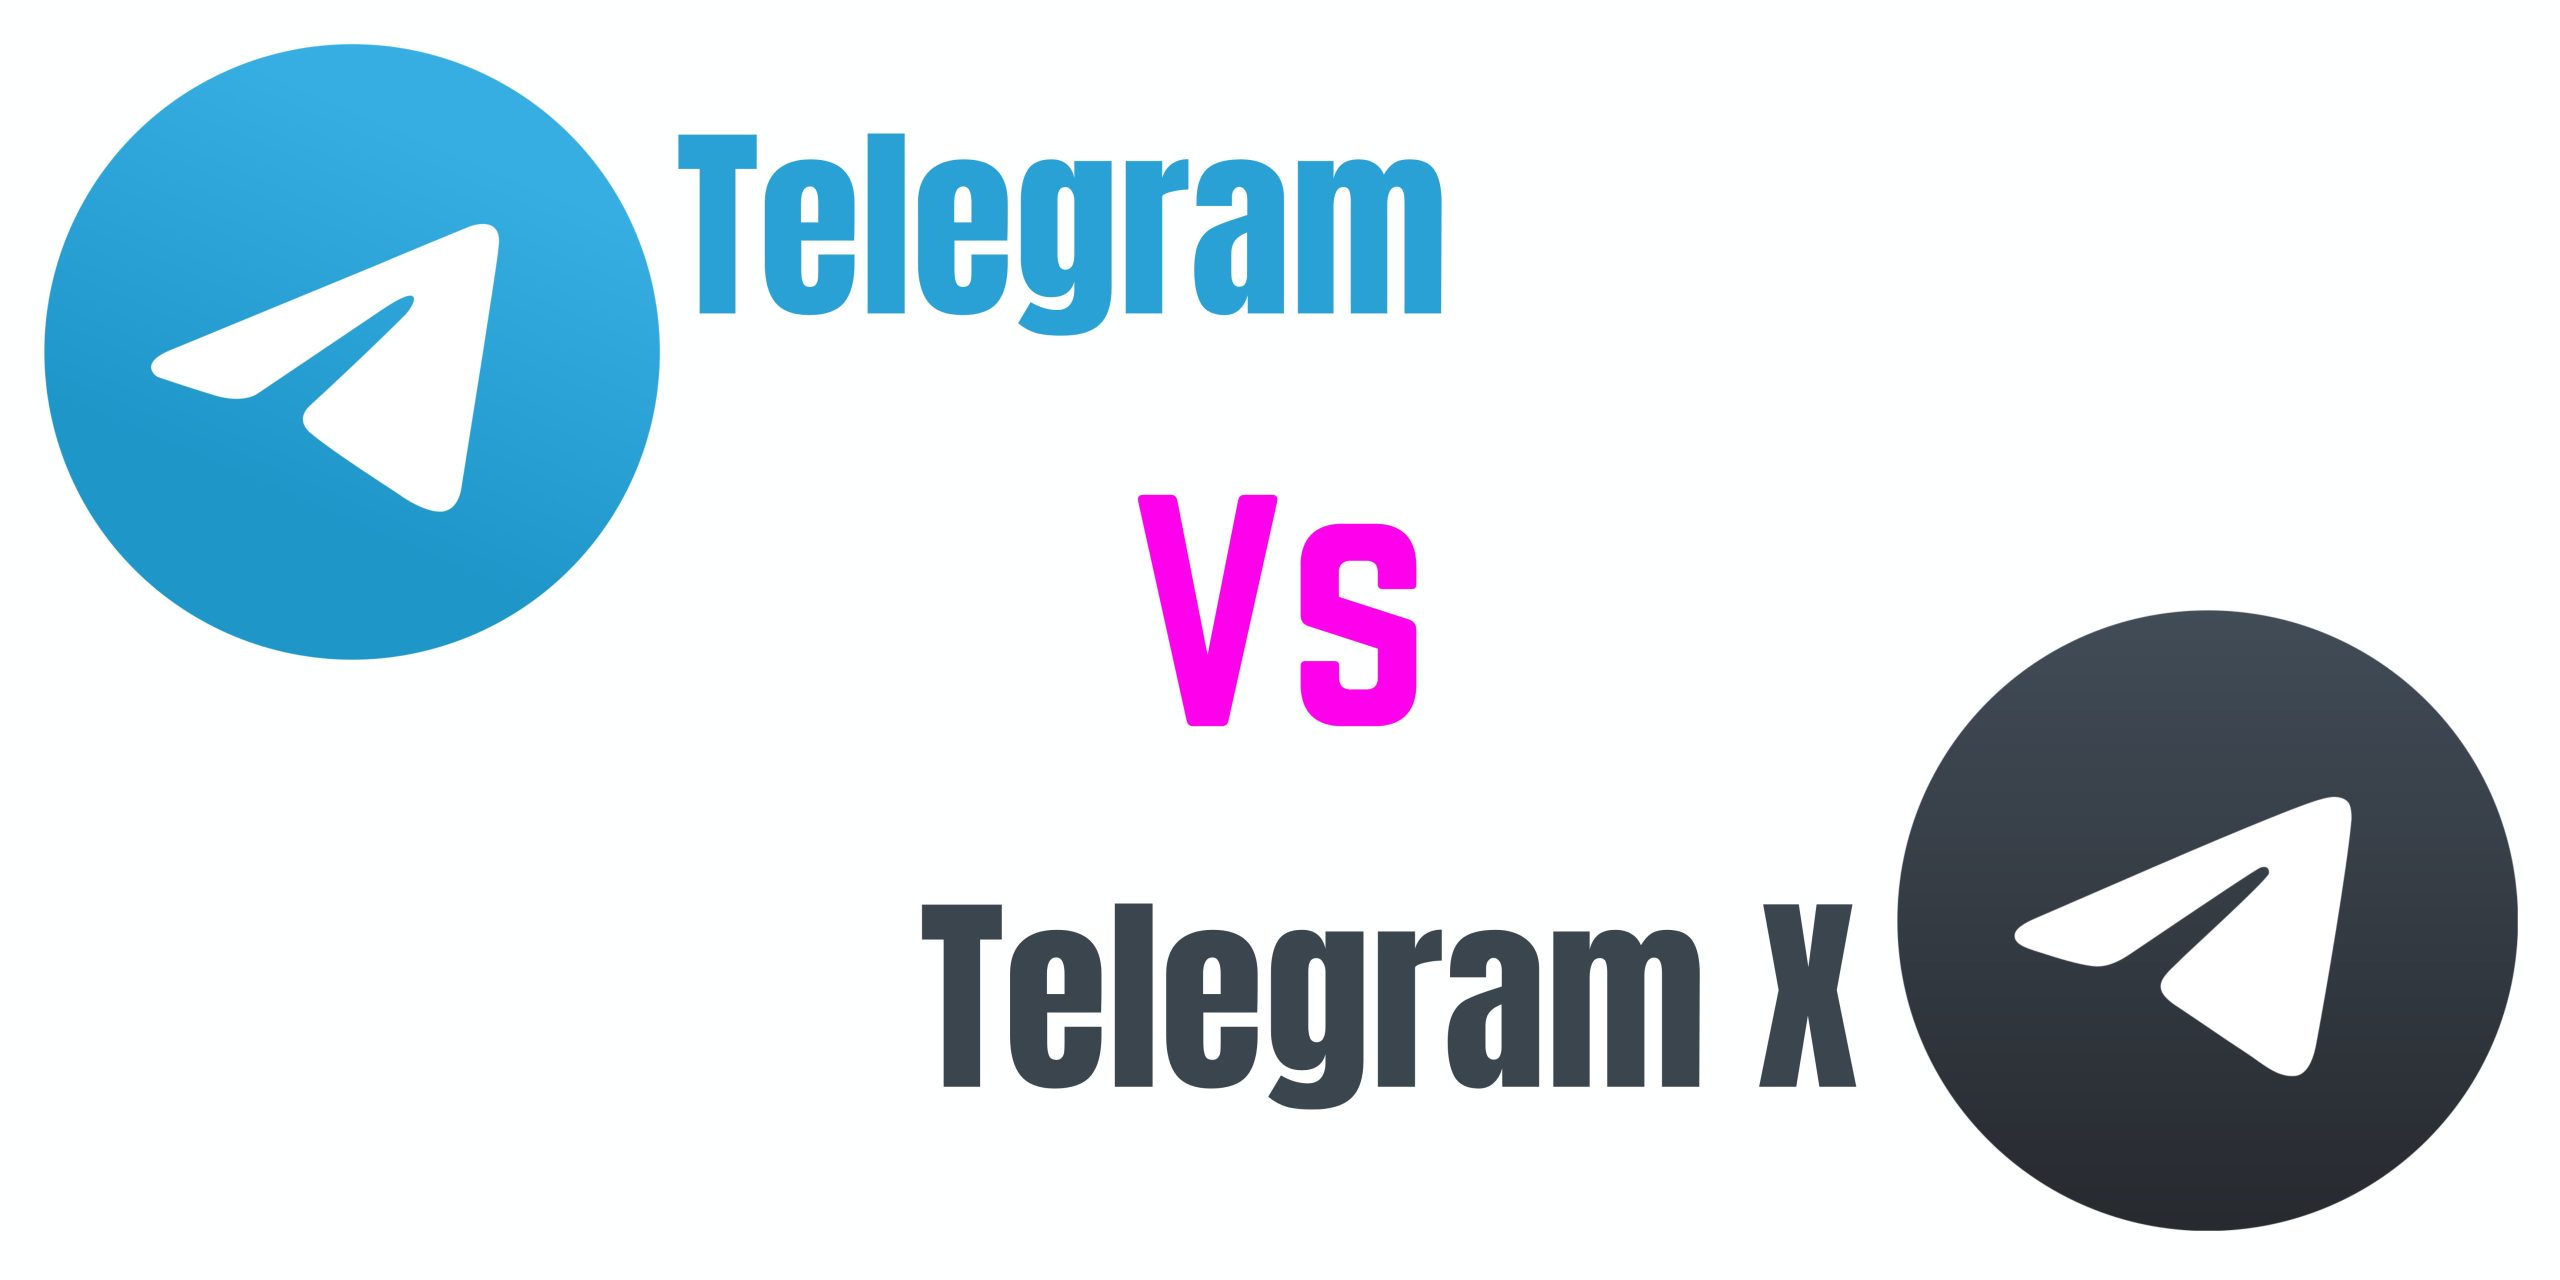  Telegram Vs Telegram X